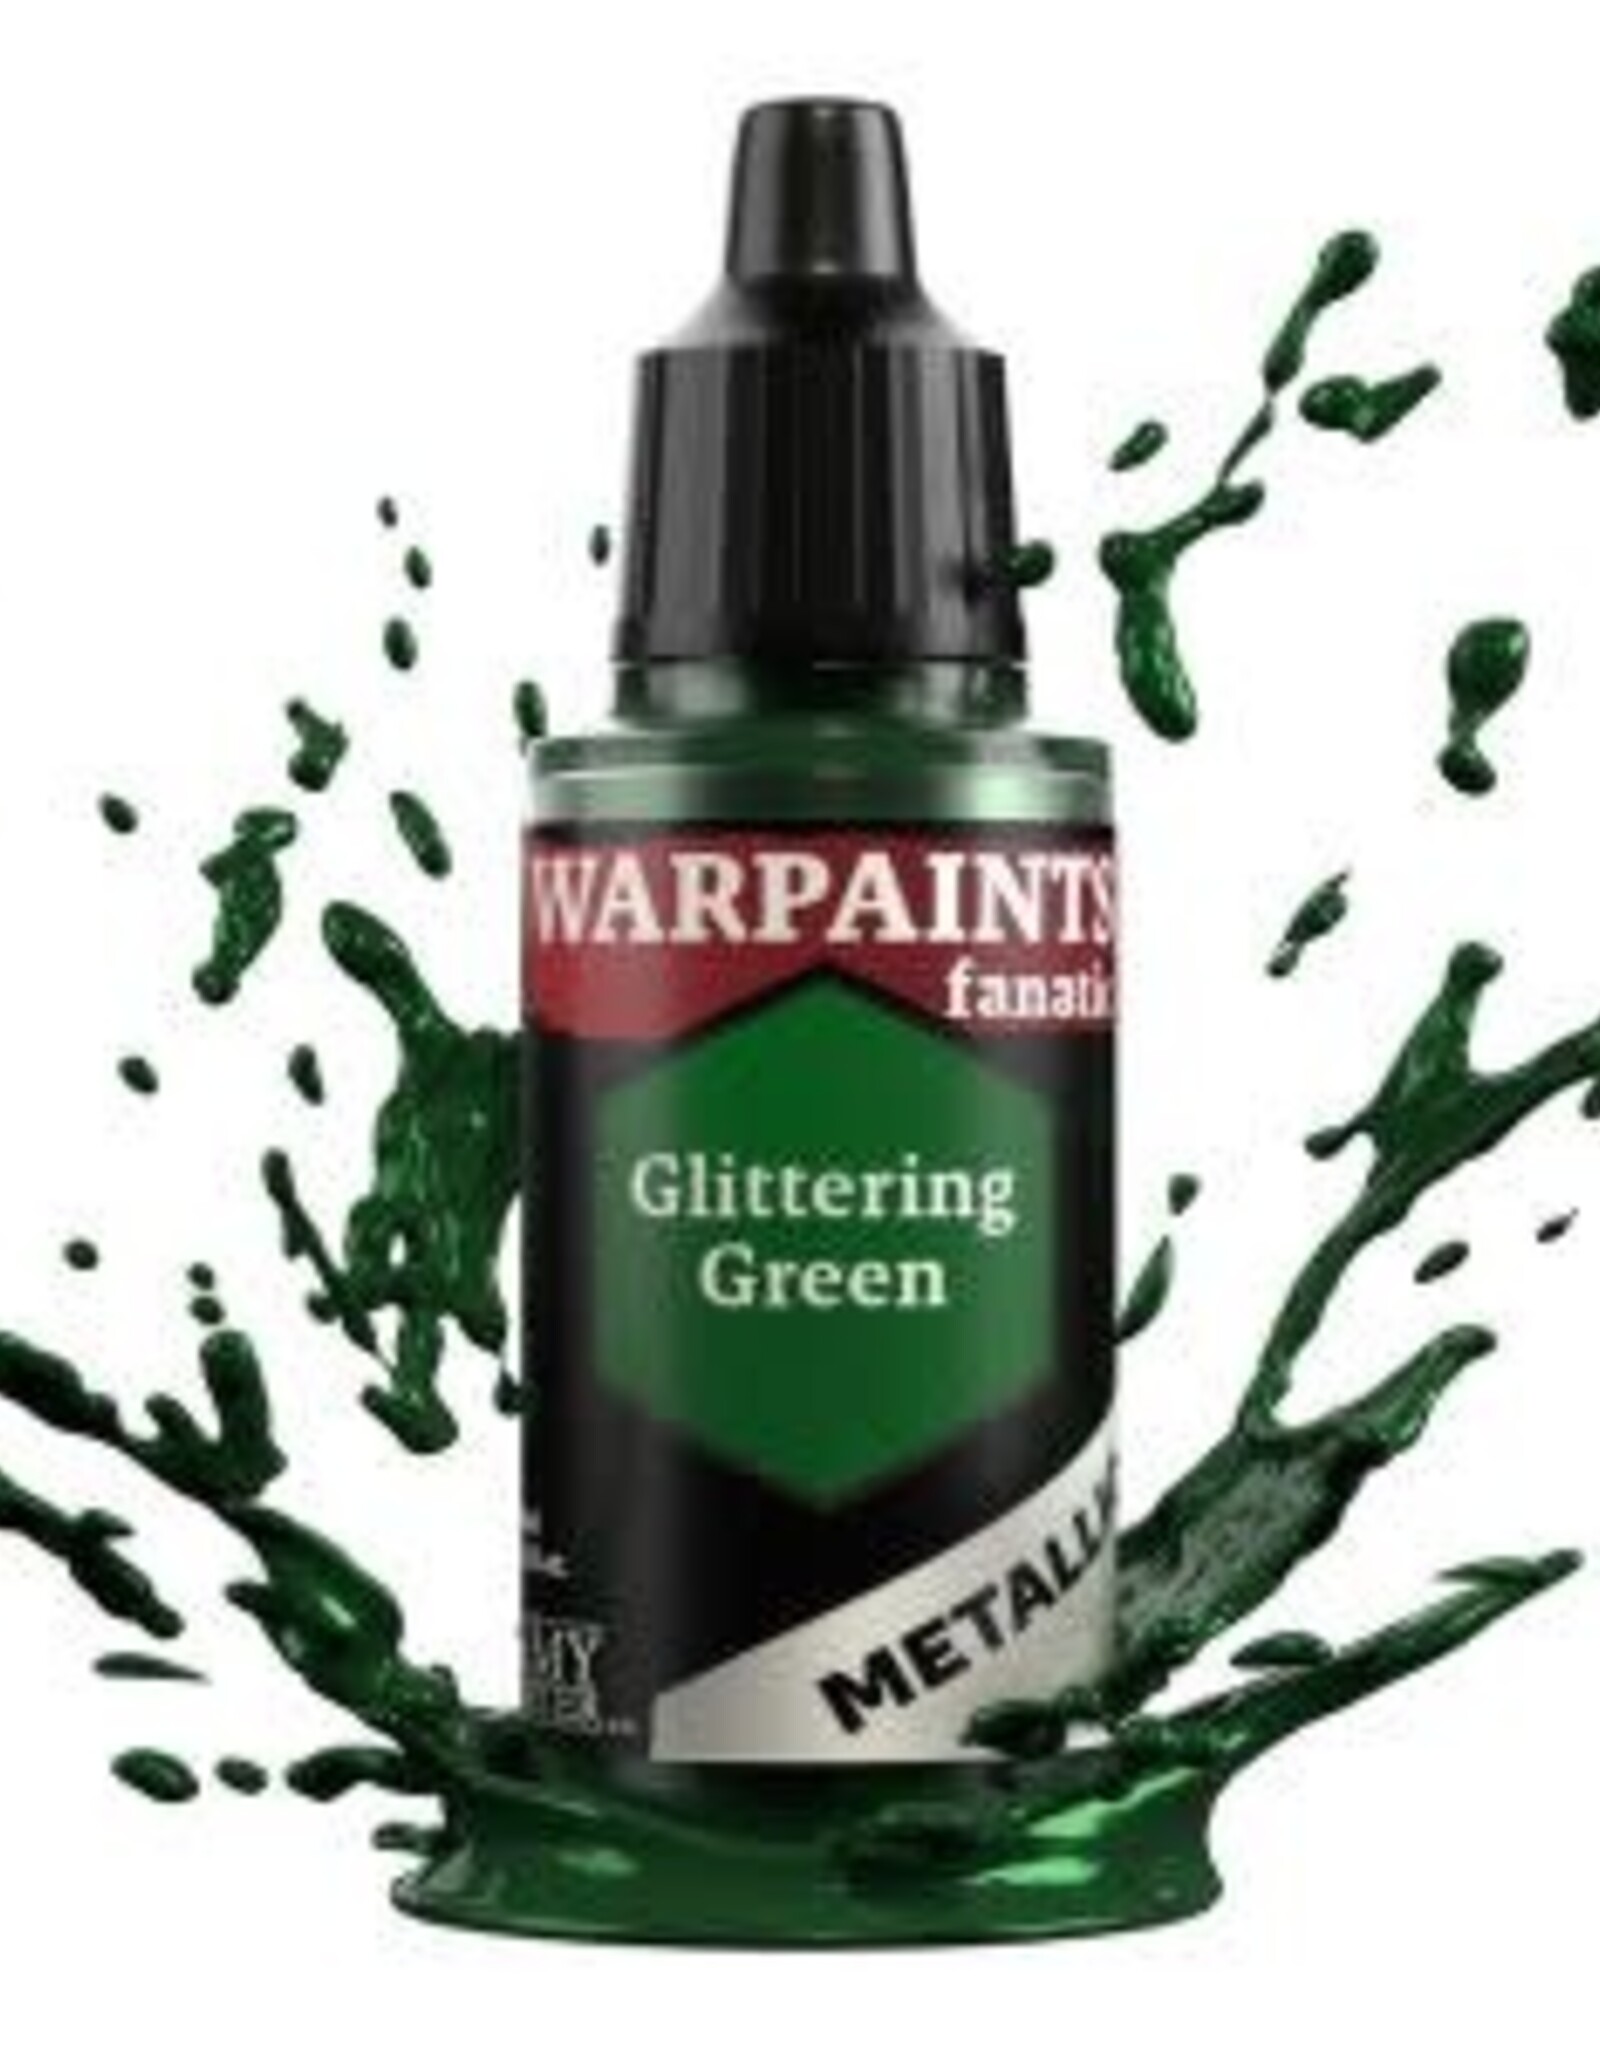 Warpaints Fanatic Metallic: Glittering Green